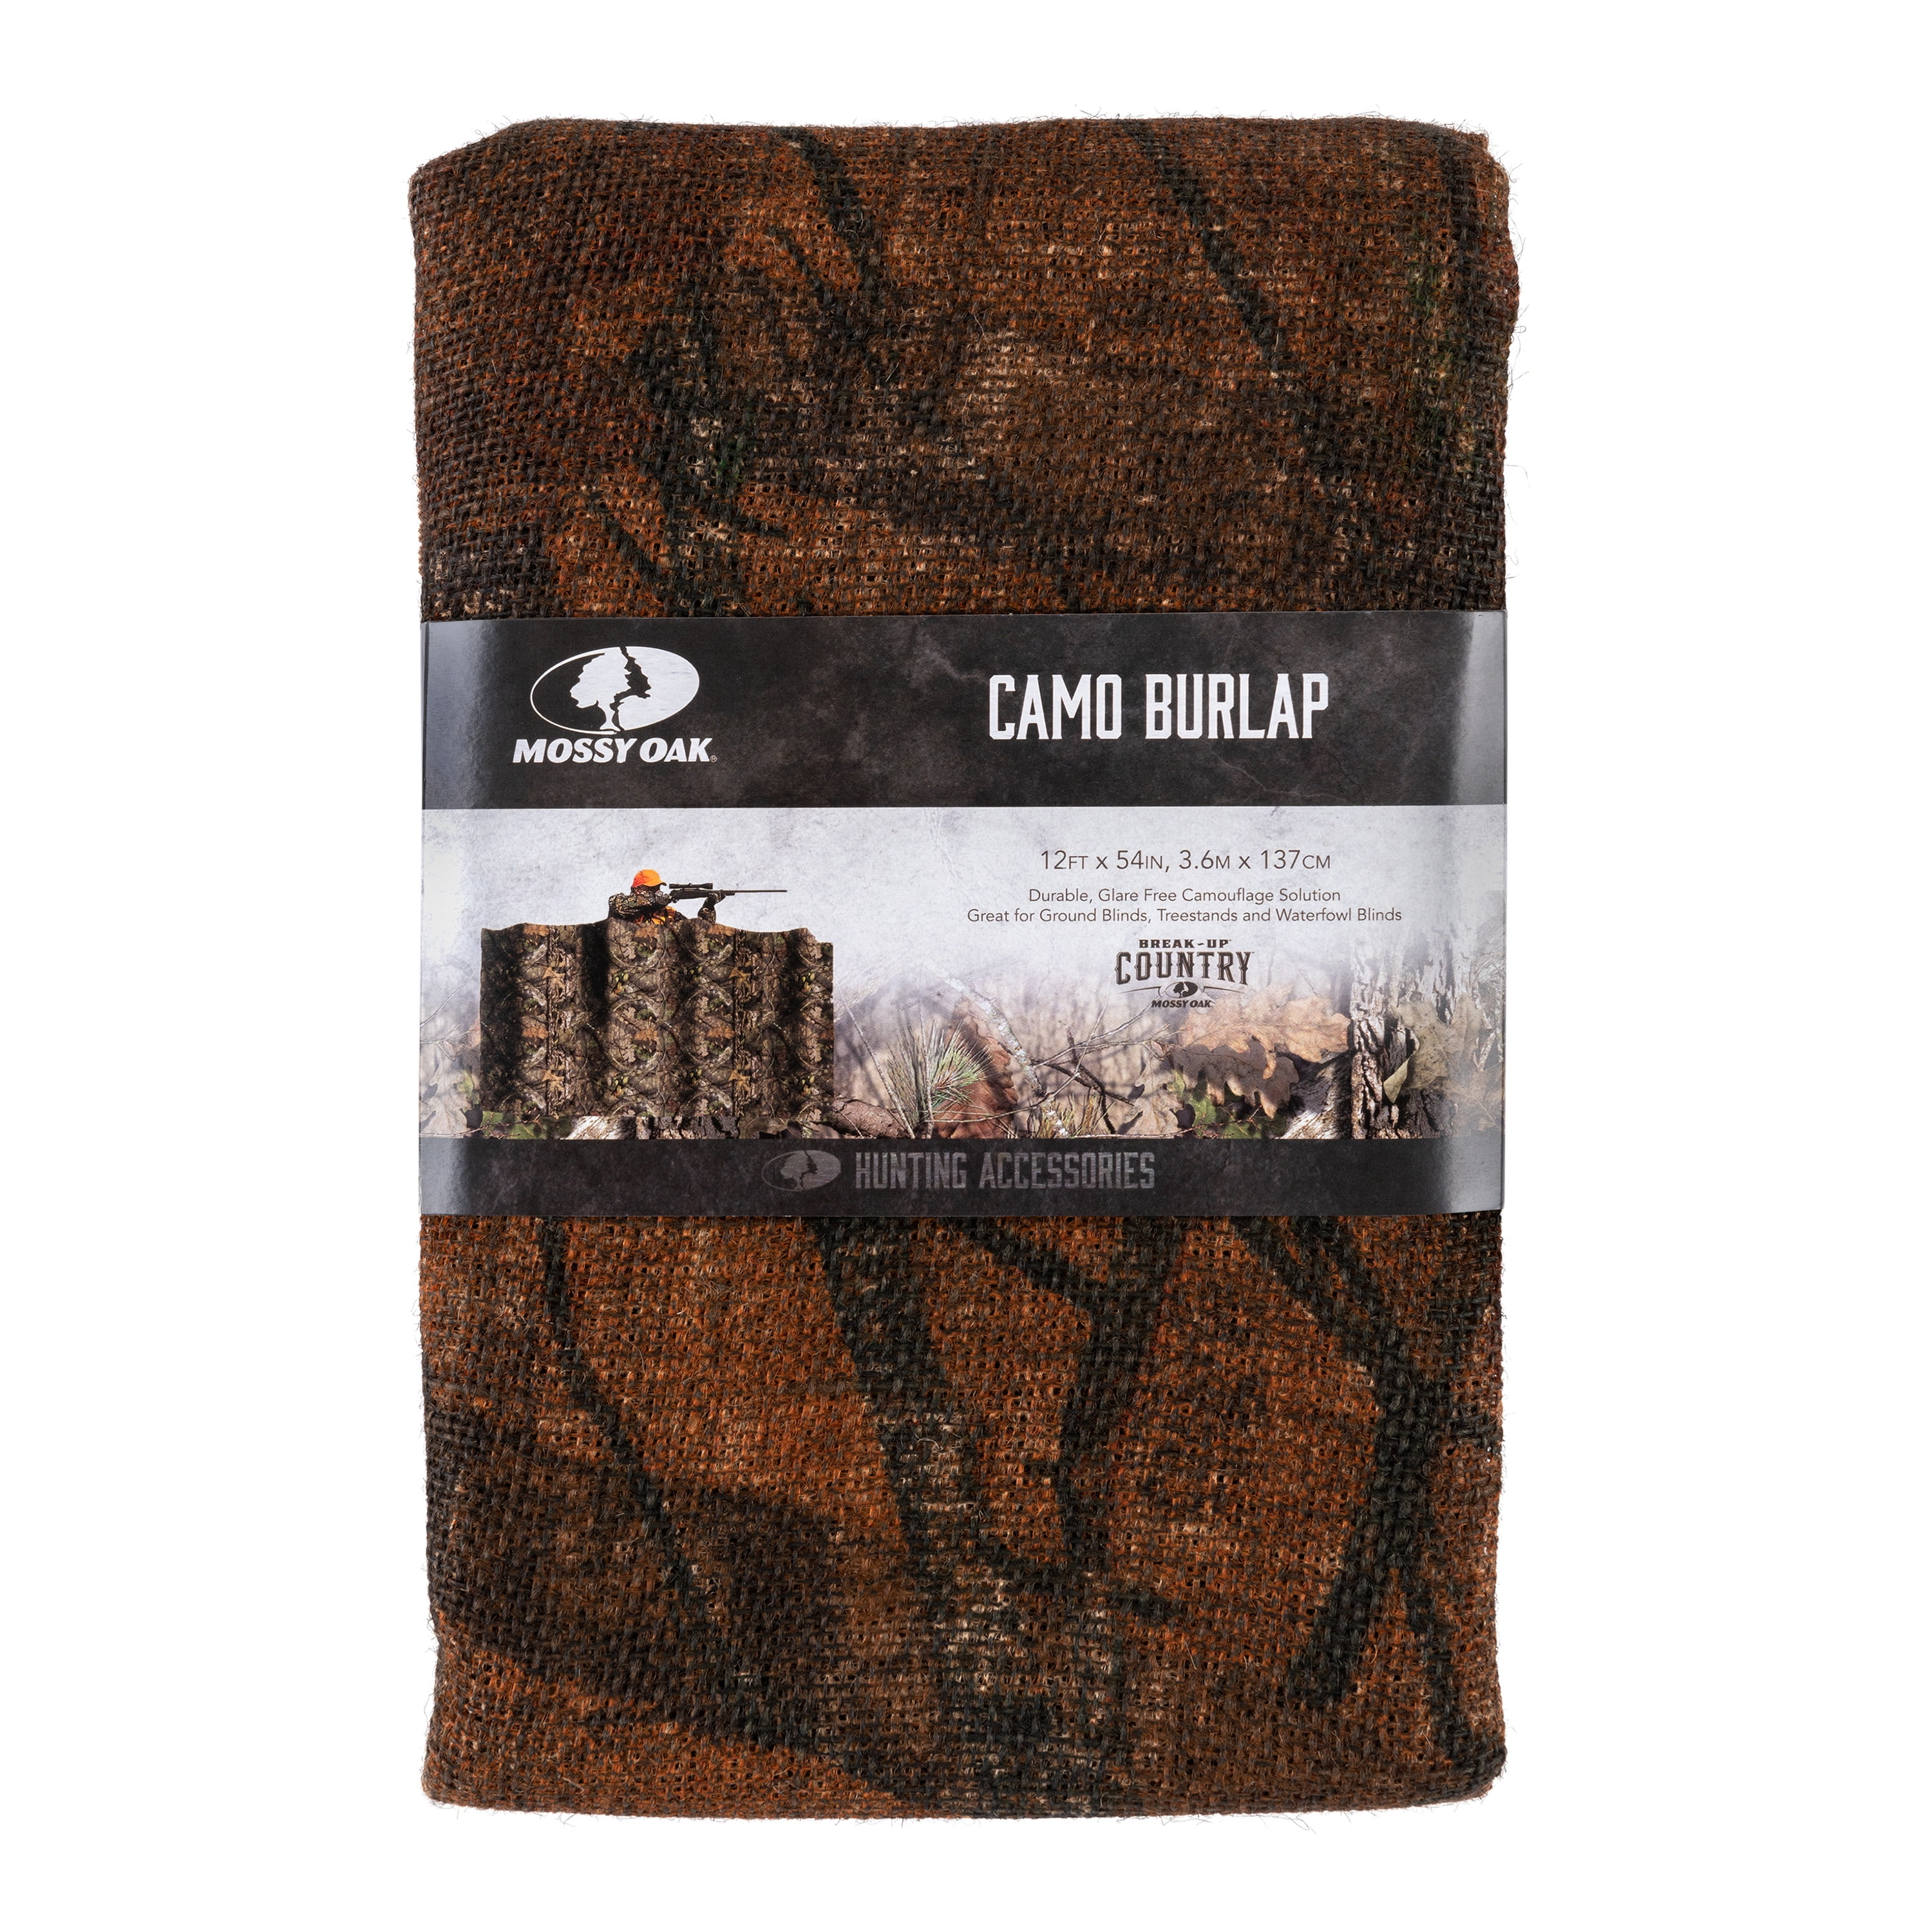 Mossy Oak Burlap Hunting Blind Material, 12' L x 56 H, Mossy Oak Camo,  Ground Blind Material